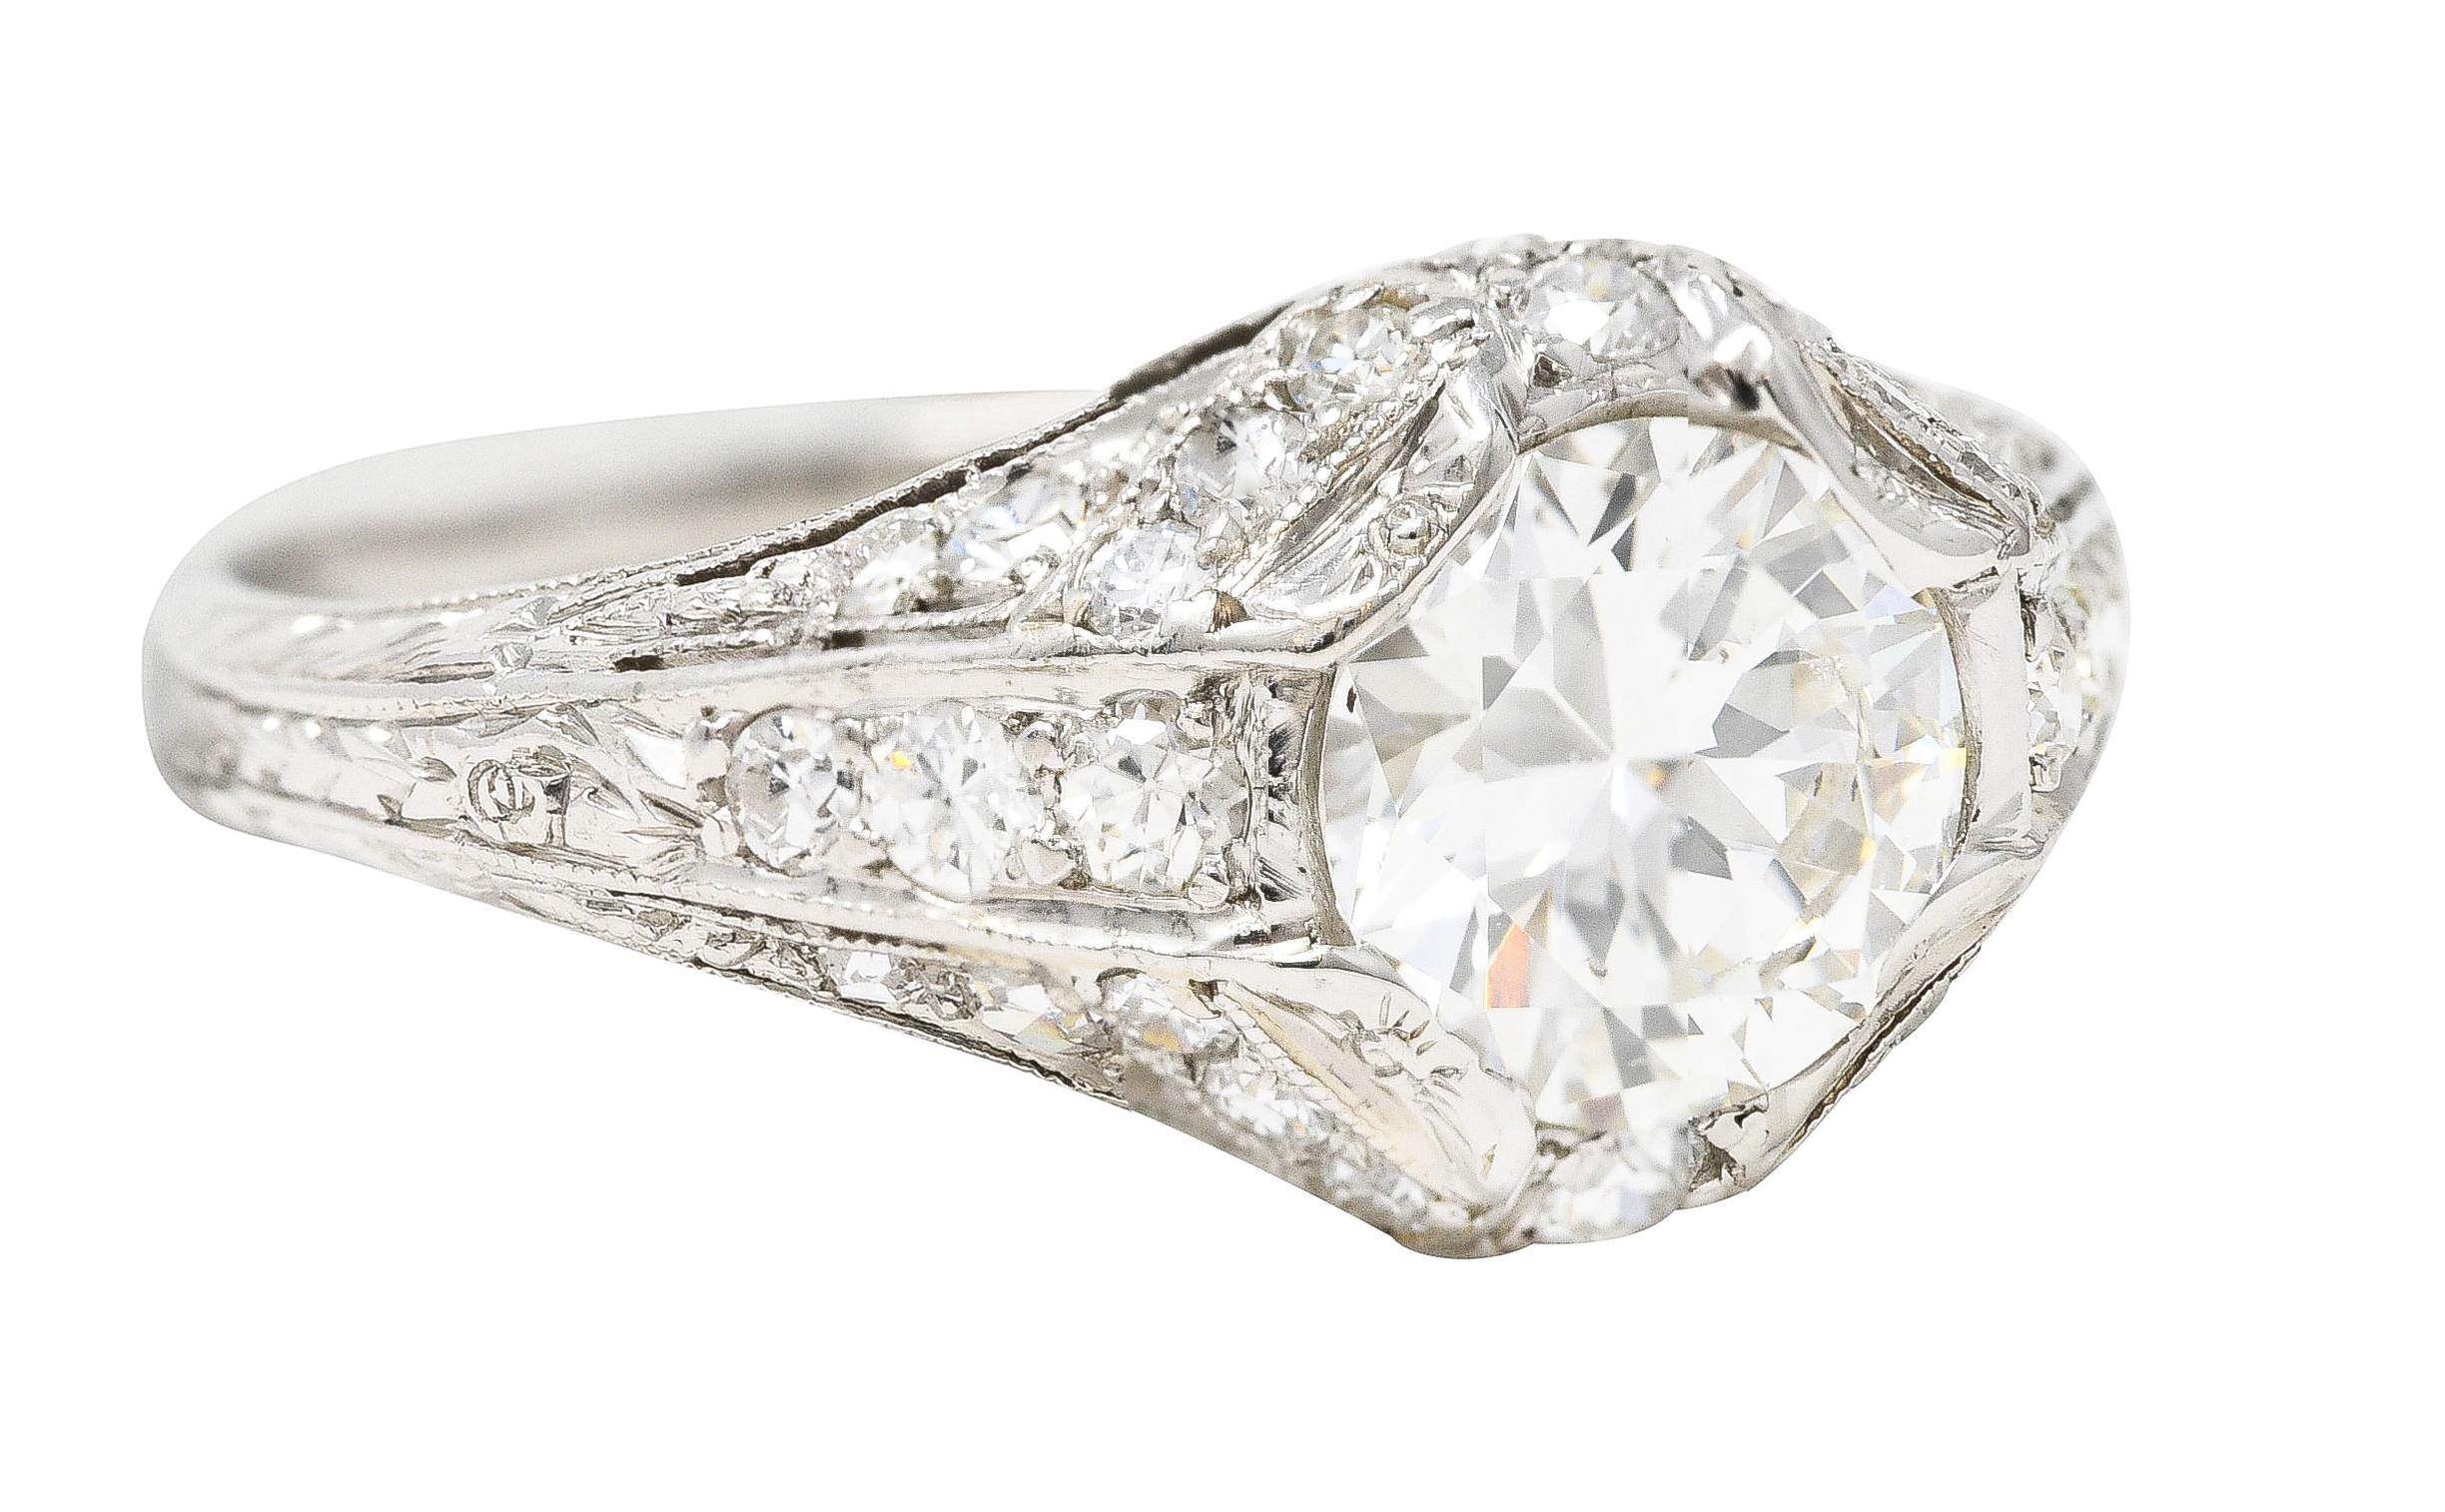 In der Mitte ein alter europäischer Diamant mit einem Gesamtgewicht von ca. 1,03 Karat - Farbe H und Reinheit SI1. Mit Zacken in einem durchbrochenen Milgrain-Detail eingefasst. Akzentuiert durch zusätzliche perlenbesetzte Diamanten im alten